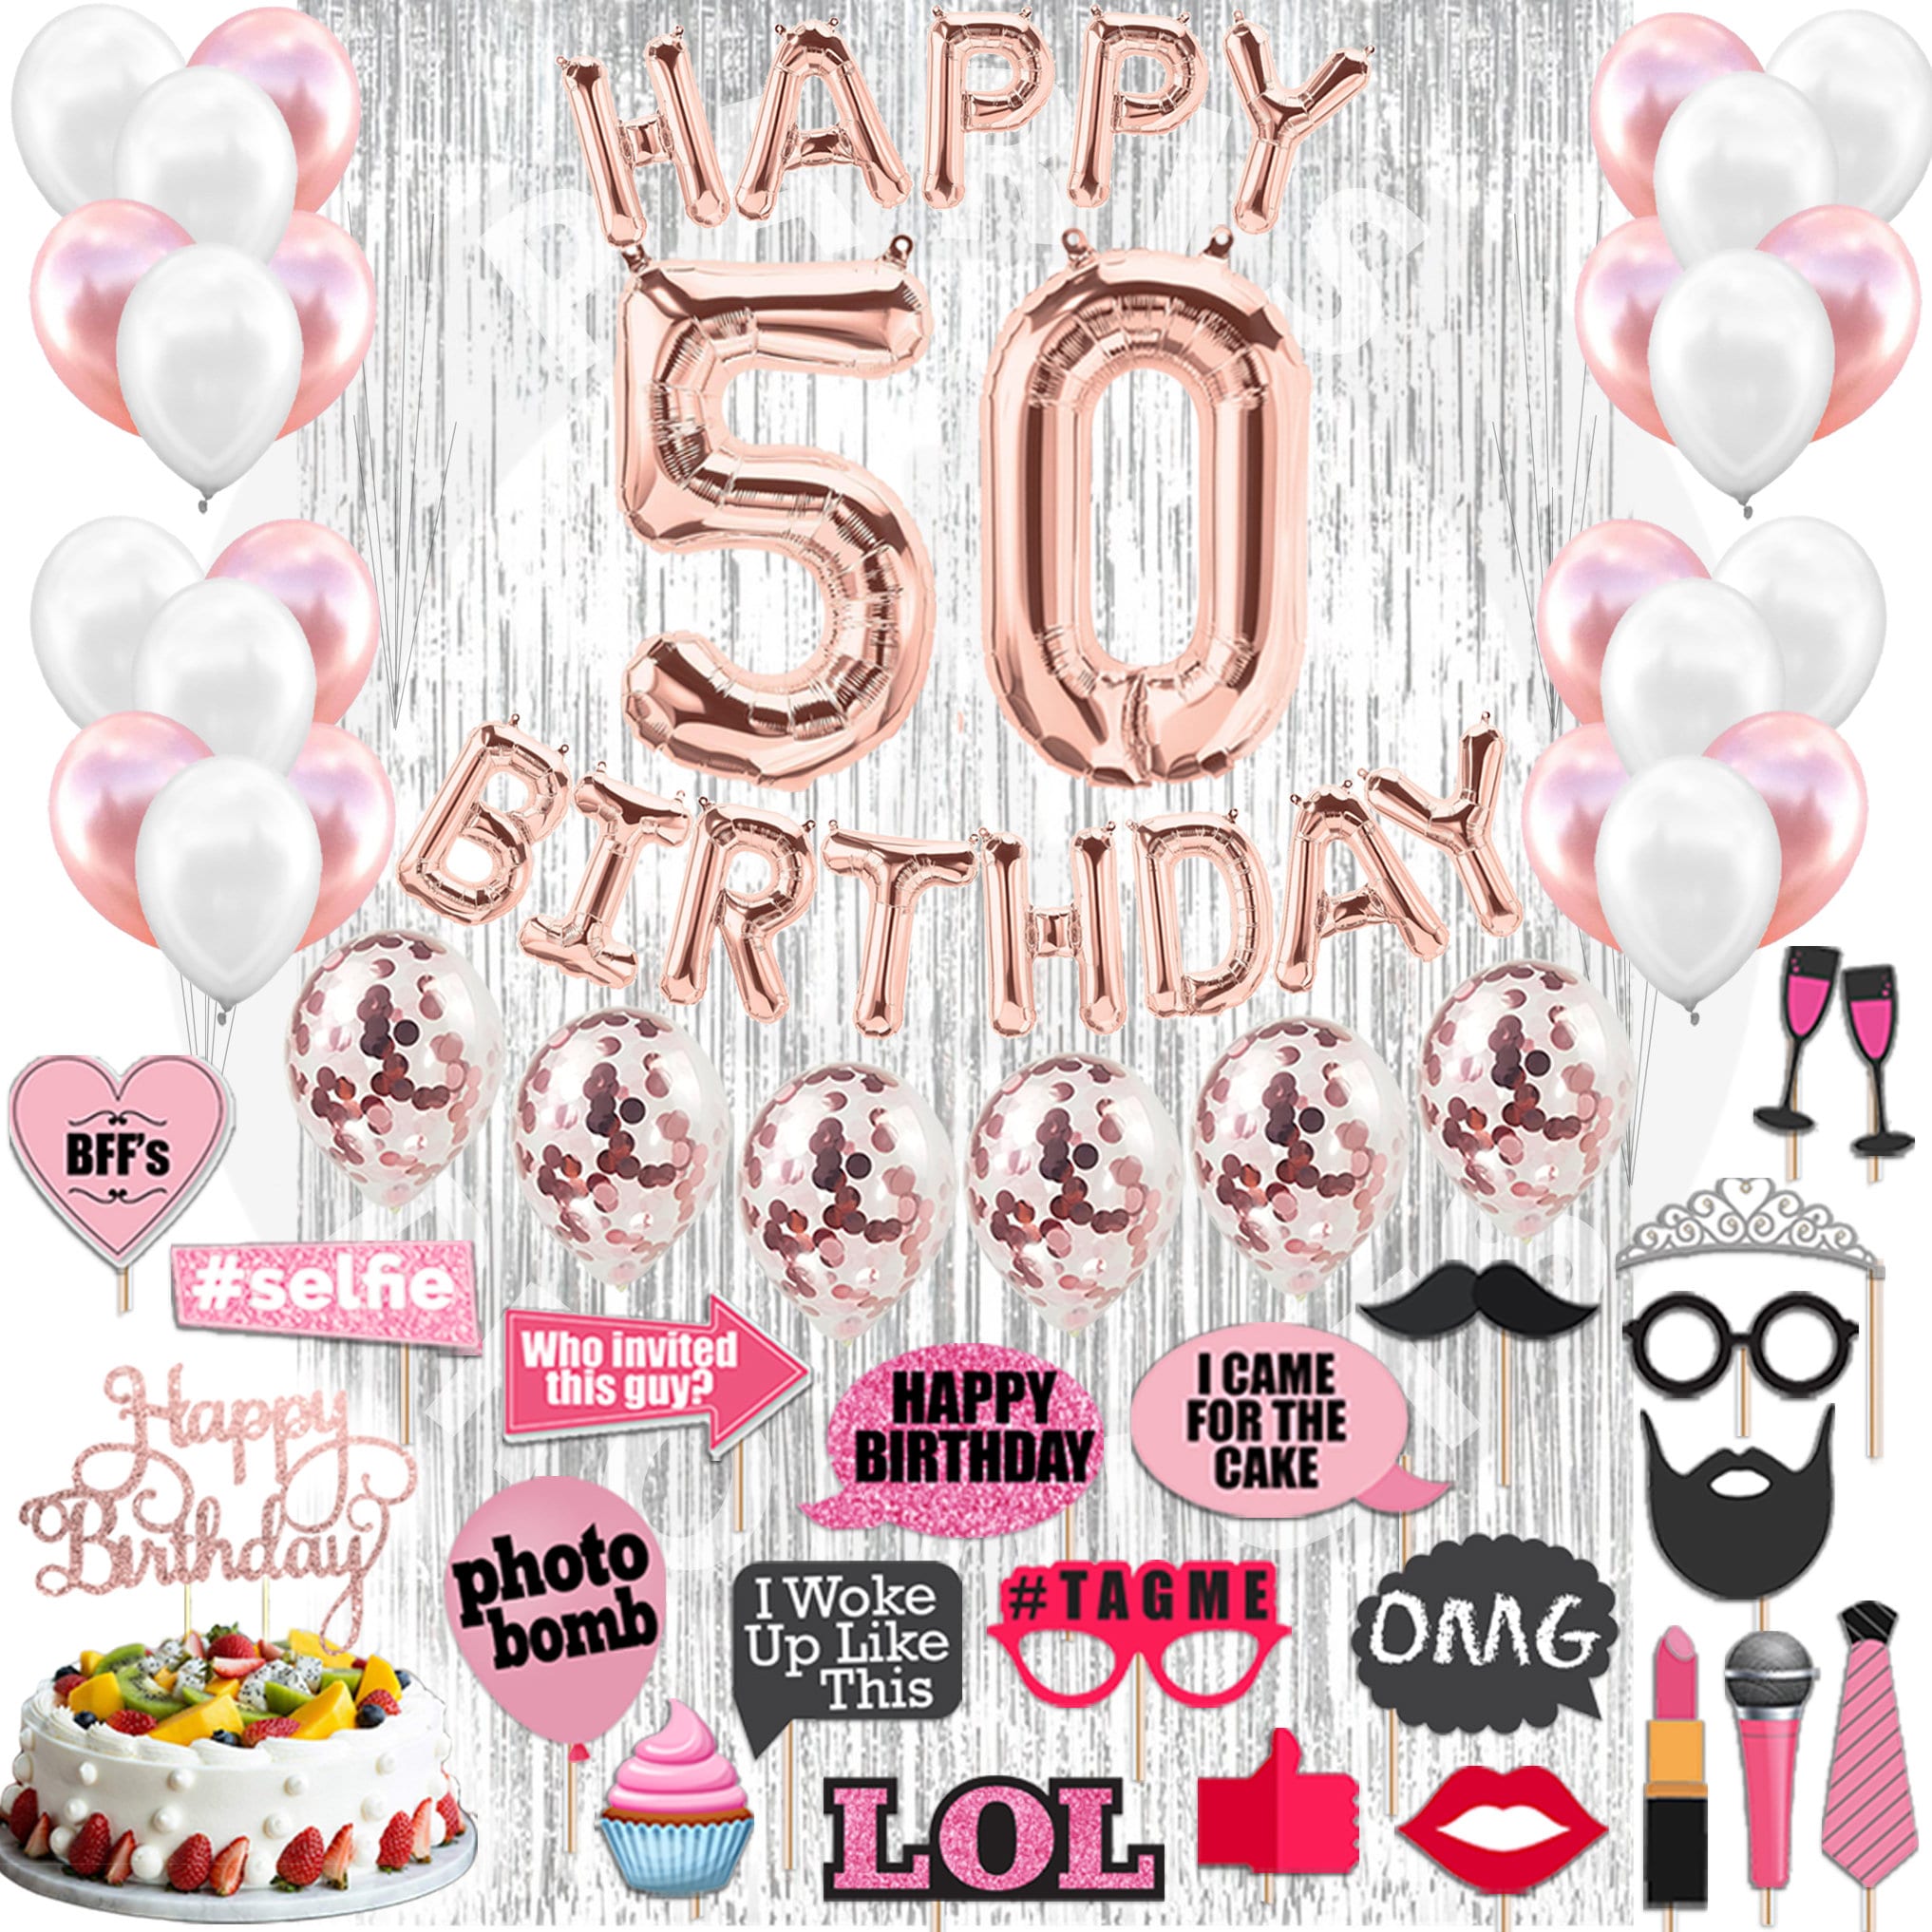 Decoraciones de cumpleaños 50 para mujeres, mamá - 50 decoraciones para  fiestas, 50 globos de oro rosa